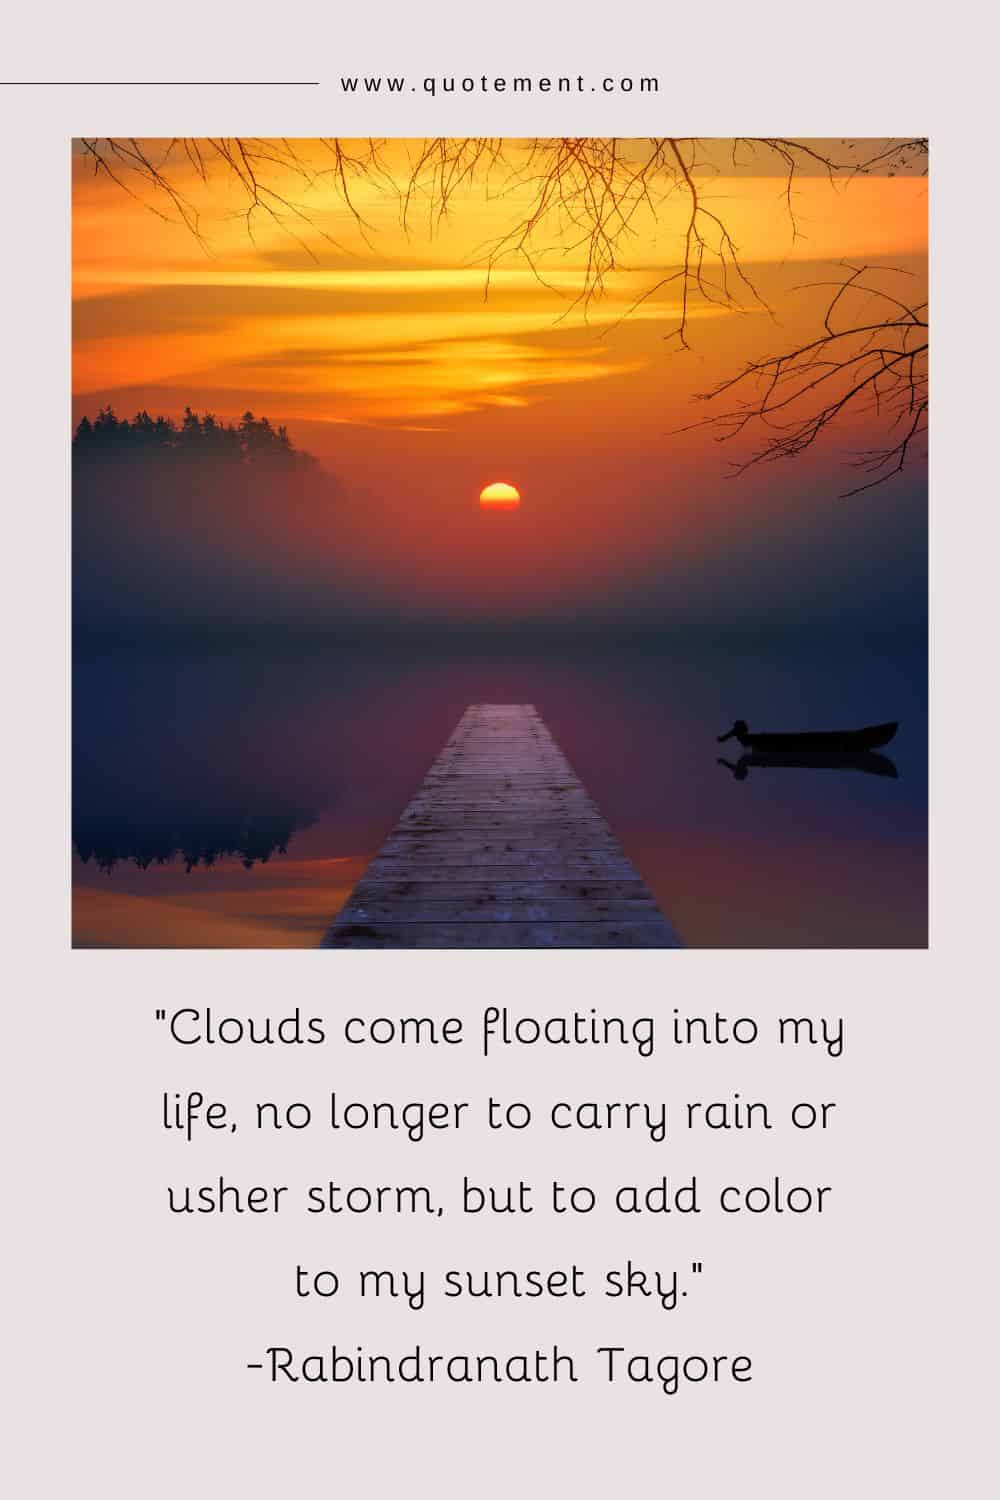 Las nubes llegan flotando a mi vida, ya no para llevar la lluvia o anunciar la tormenta, sino para dar color a mi cielo al atardecer